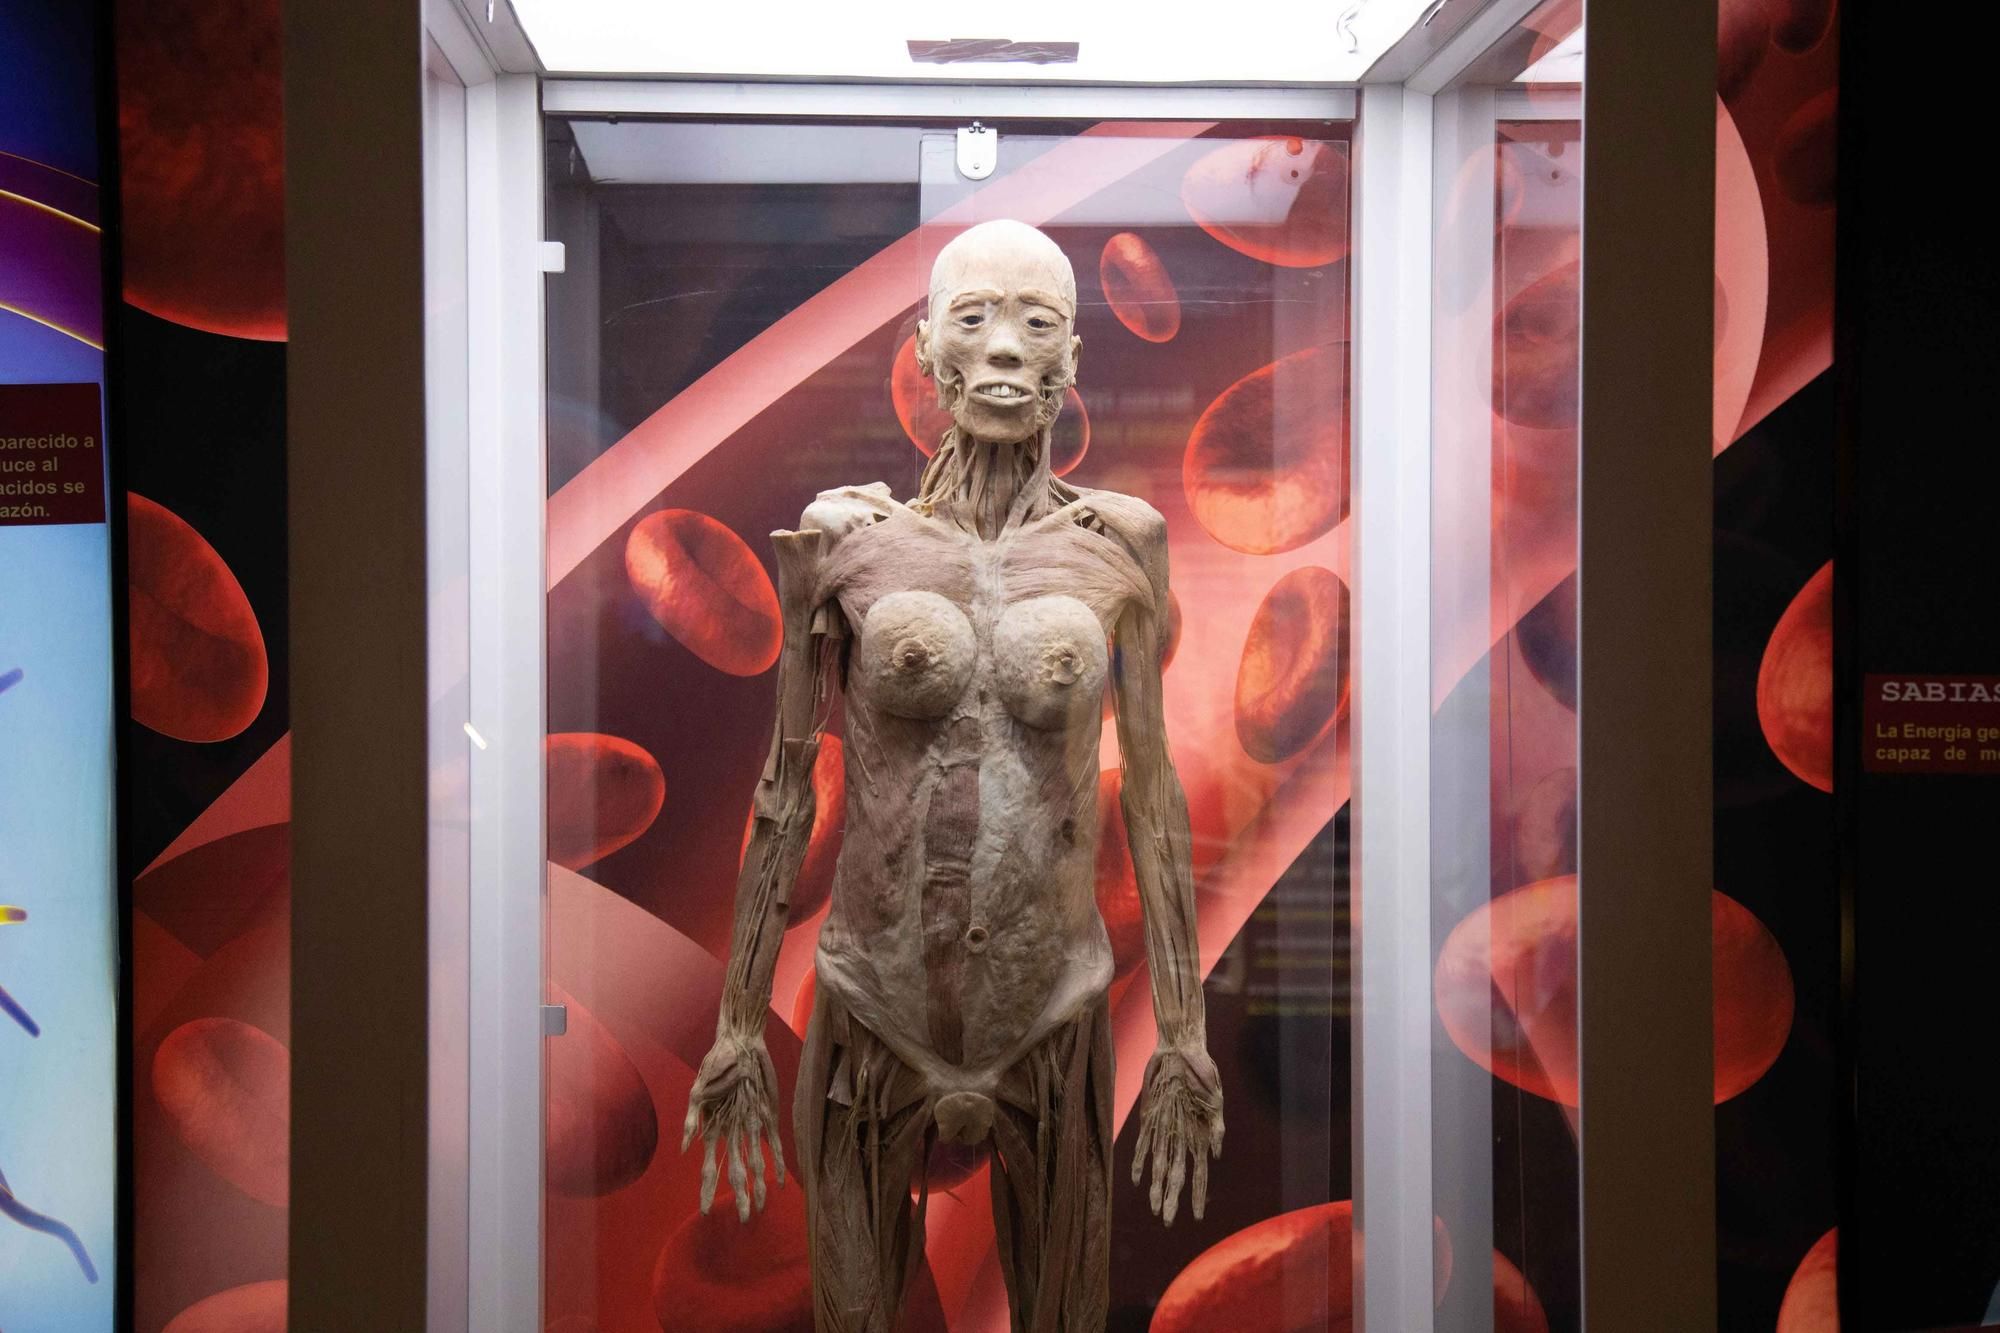 Präparierte menschliche Körper und Organe in der Ausstellung "Bodies" bewundern